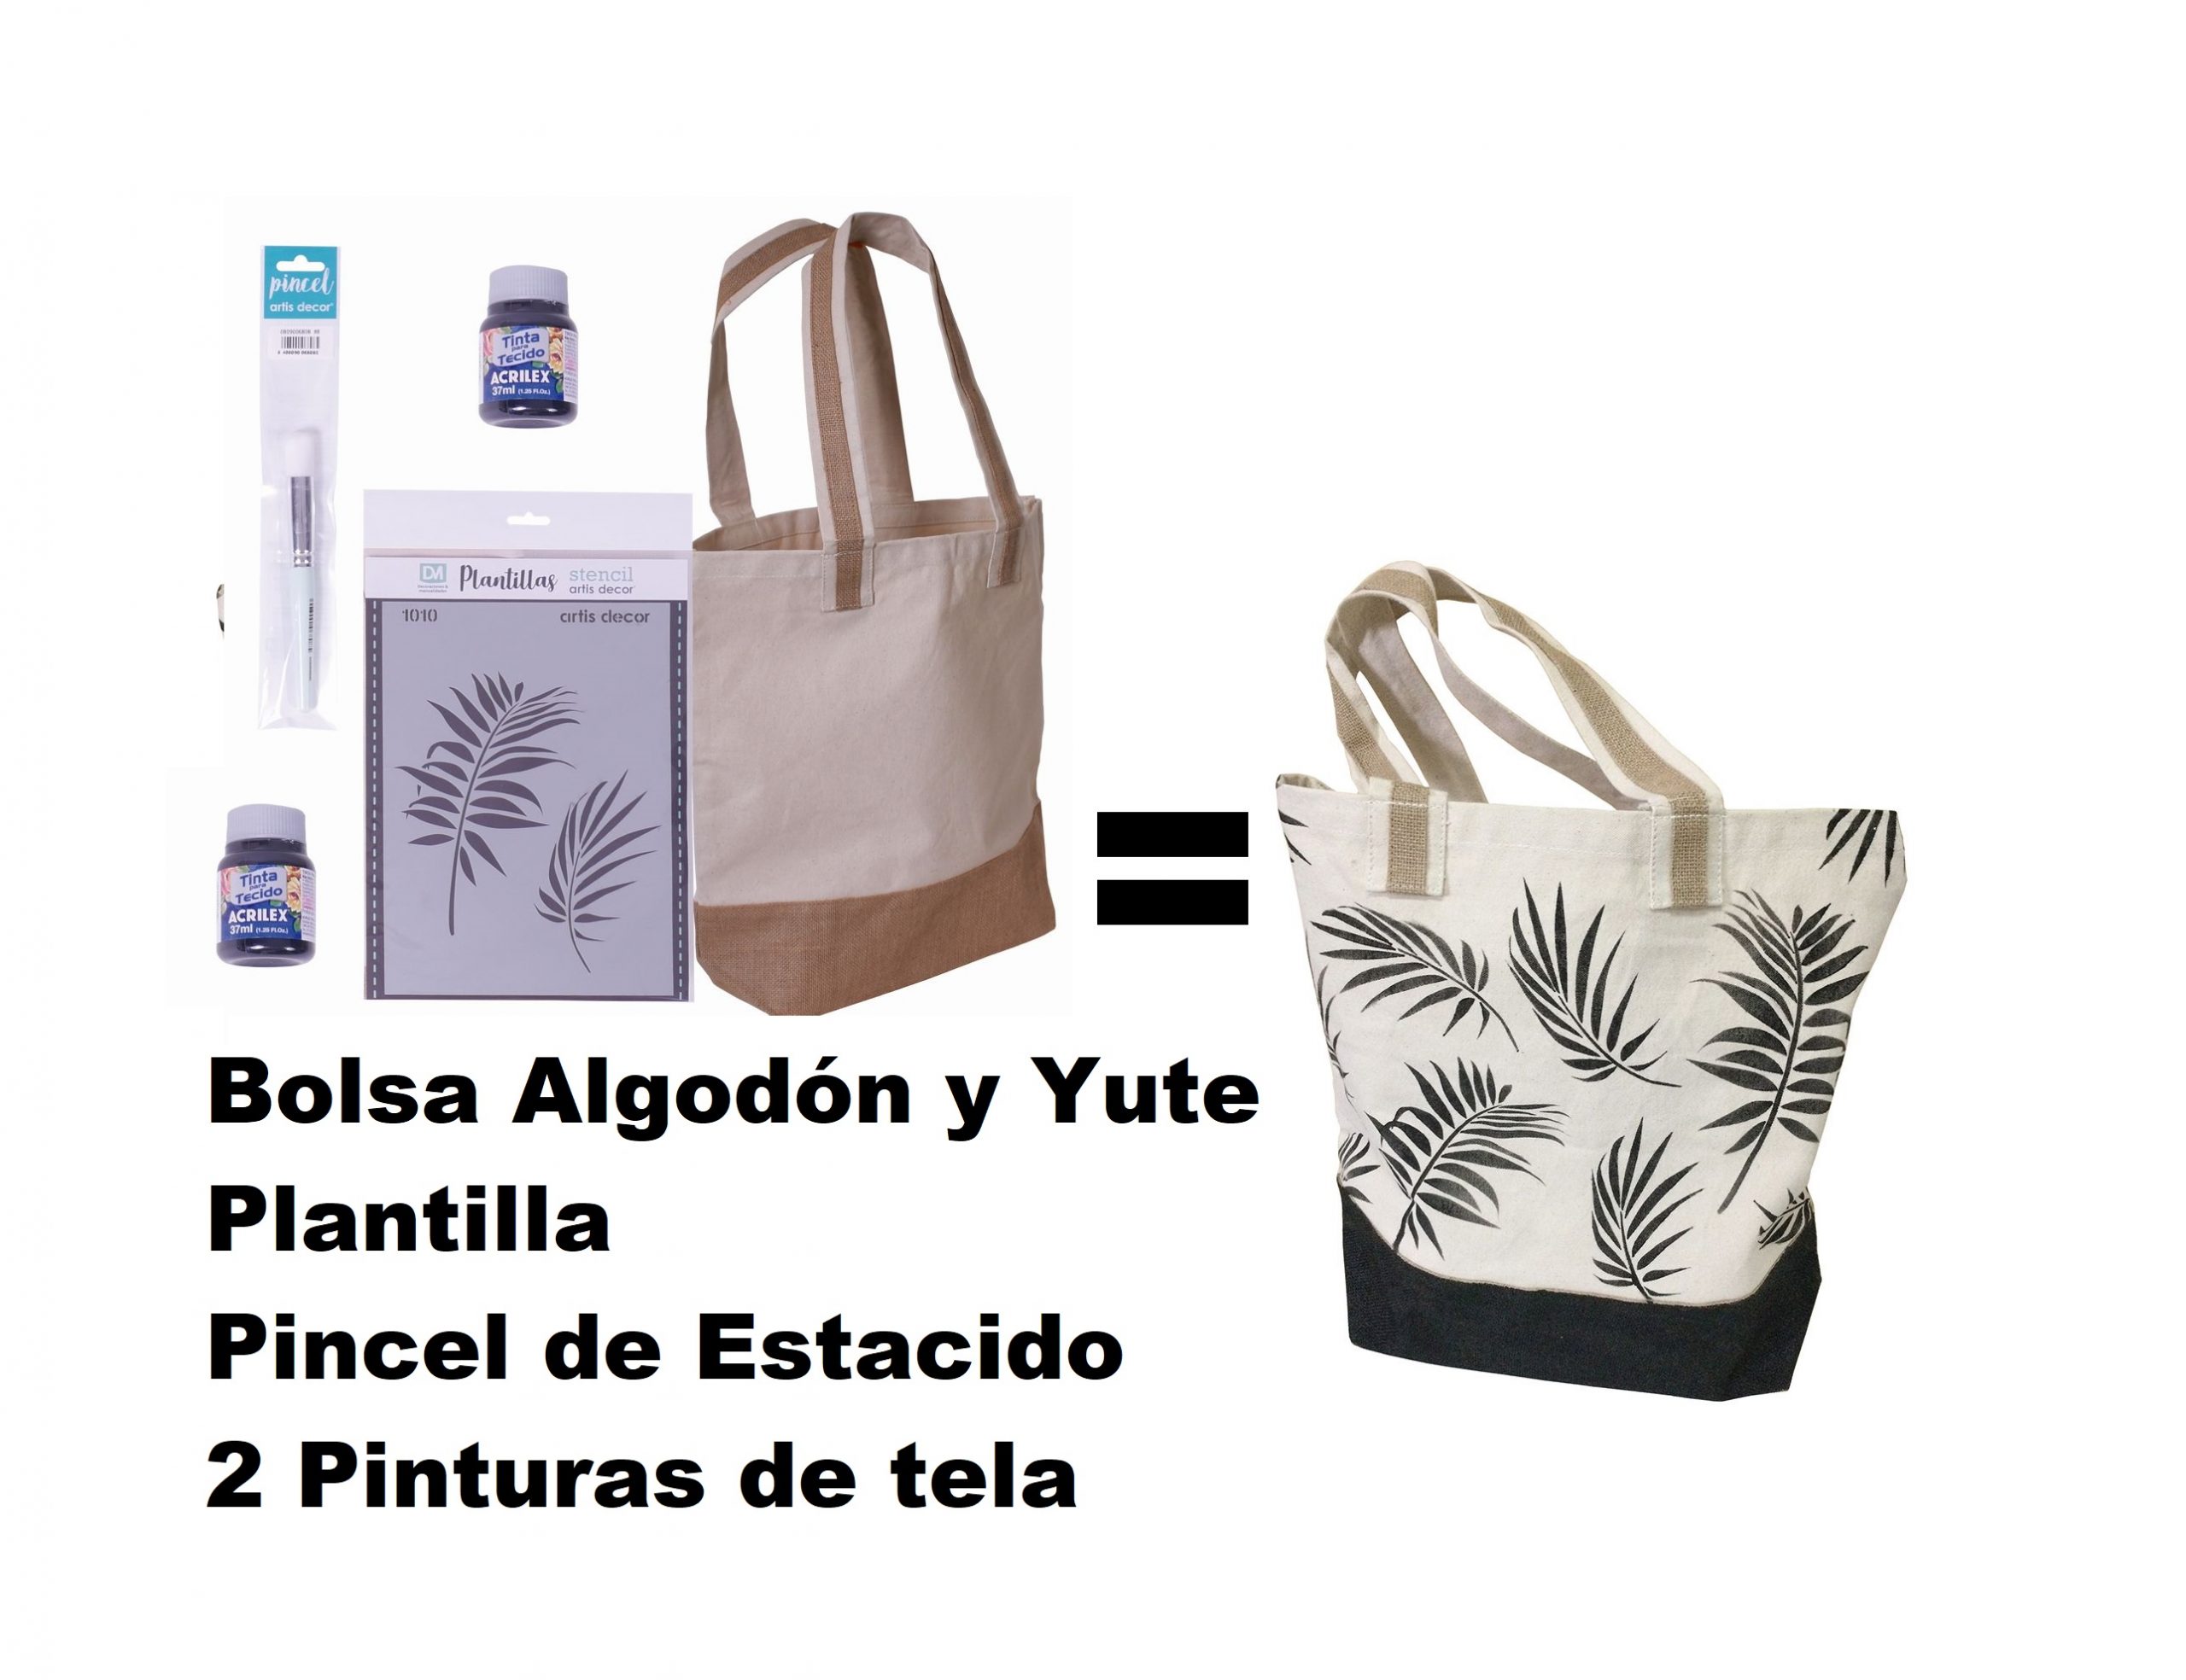 Kit Bolsa de Algodón y Yute, Plantilla, pincel de Estarcido y Pinturas de  tela